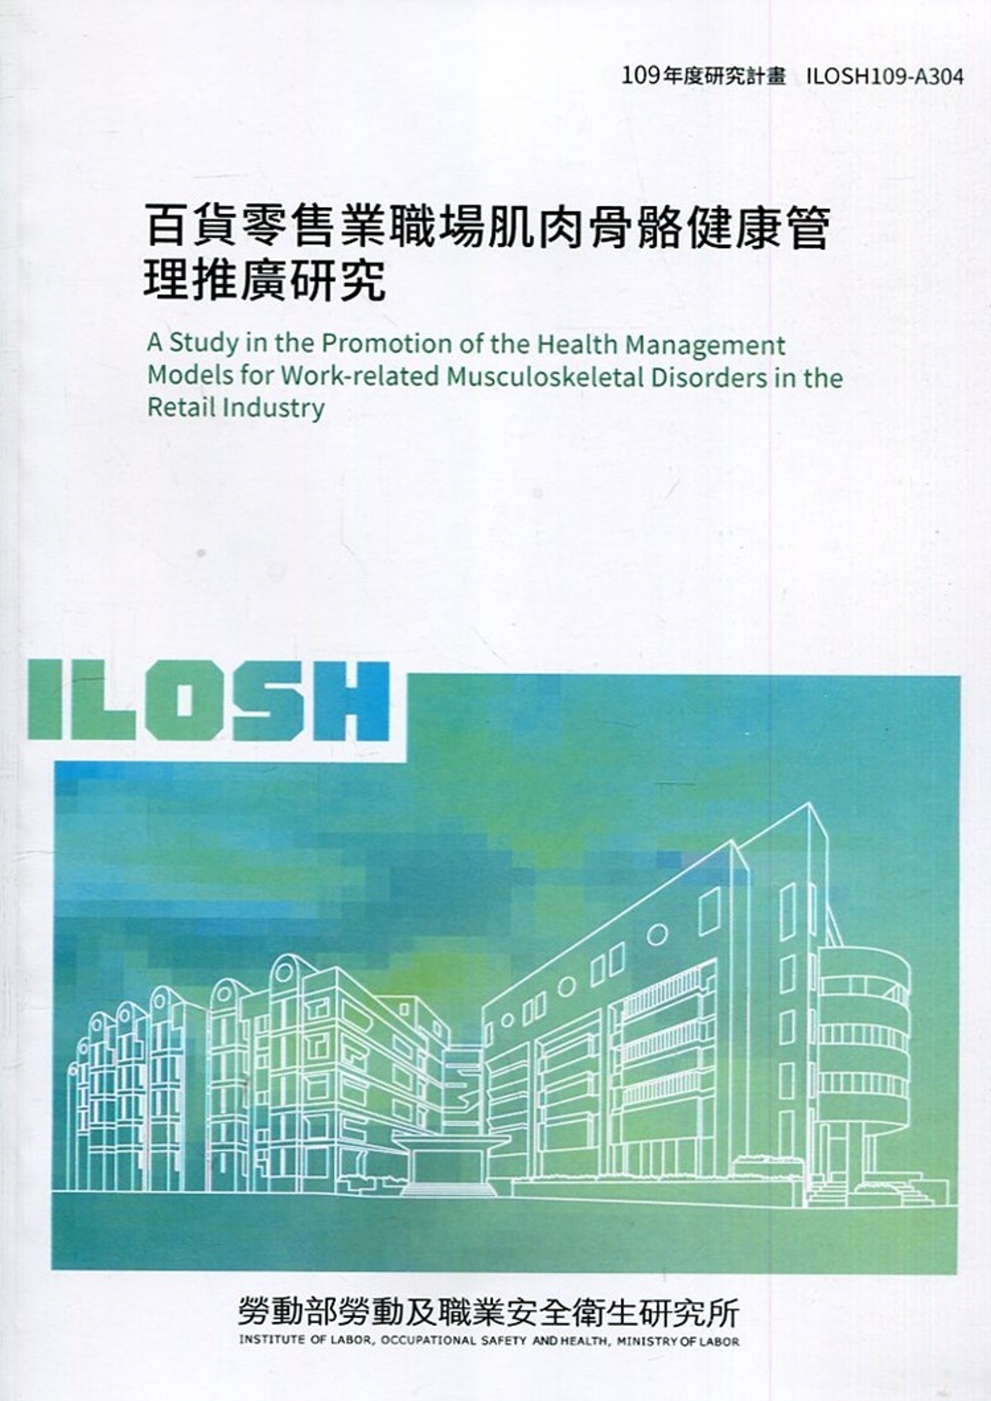 百貨零售業職場肌肉骨骼健康管理推廣研究 ILOSH109-A304